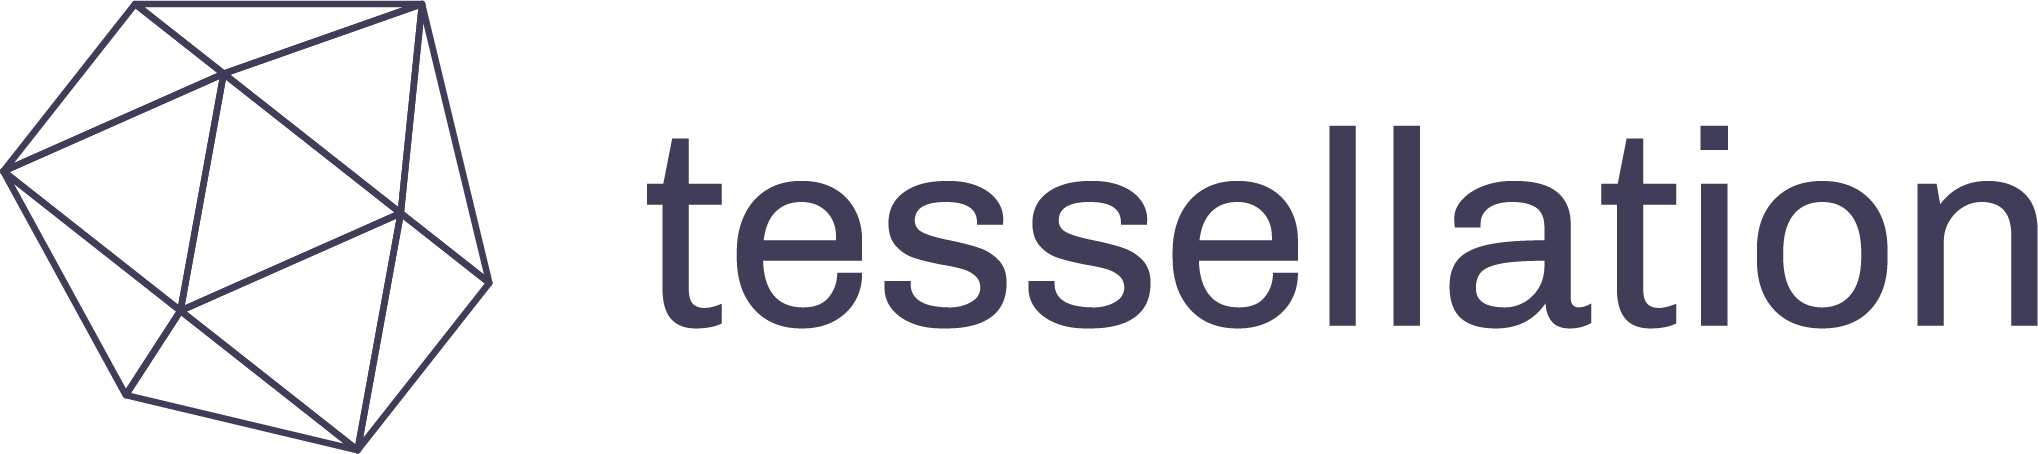 Tessellation_Logo_v5-01